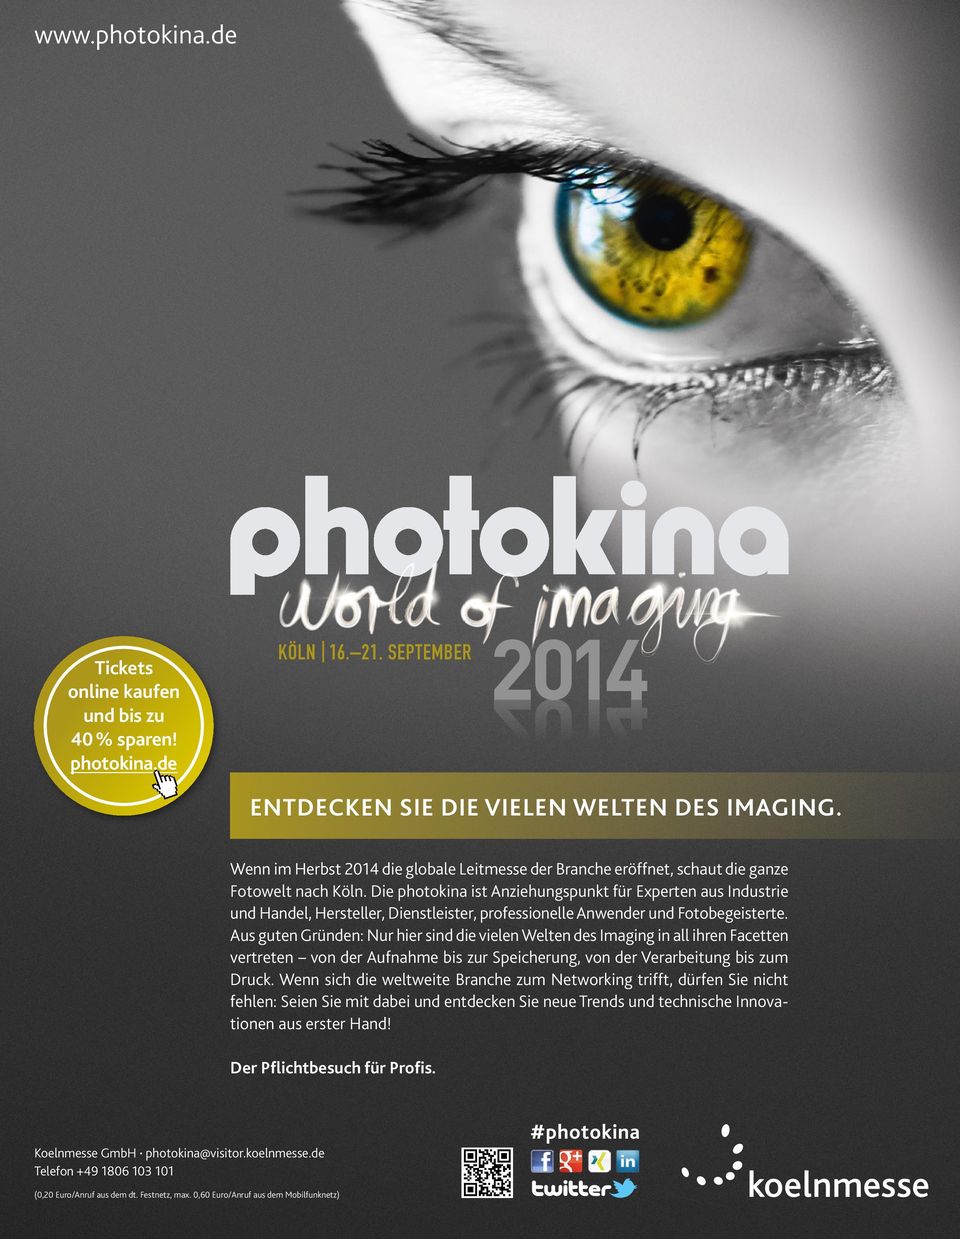 Die photokina ist Anziehungspunkt für Experten aus Industrie und Handel, Hersteller, Dienstleister, professionelle Anwender und Fotobe geisterte.